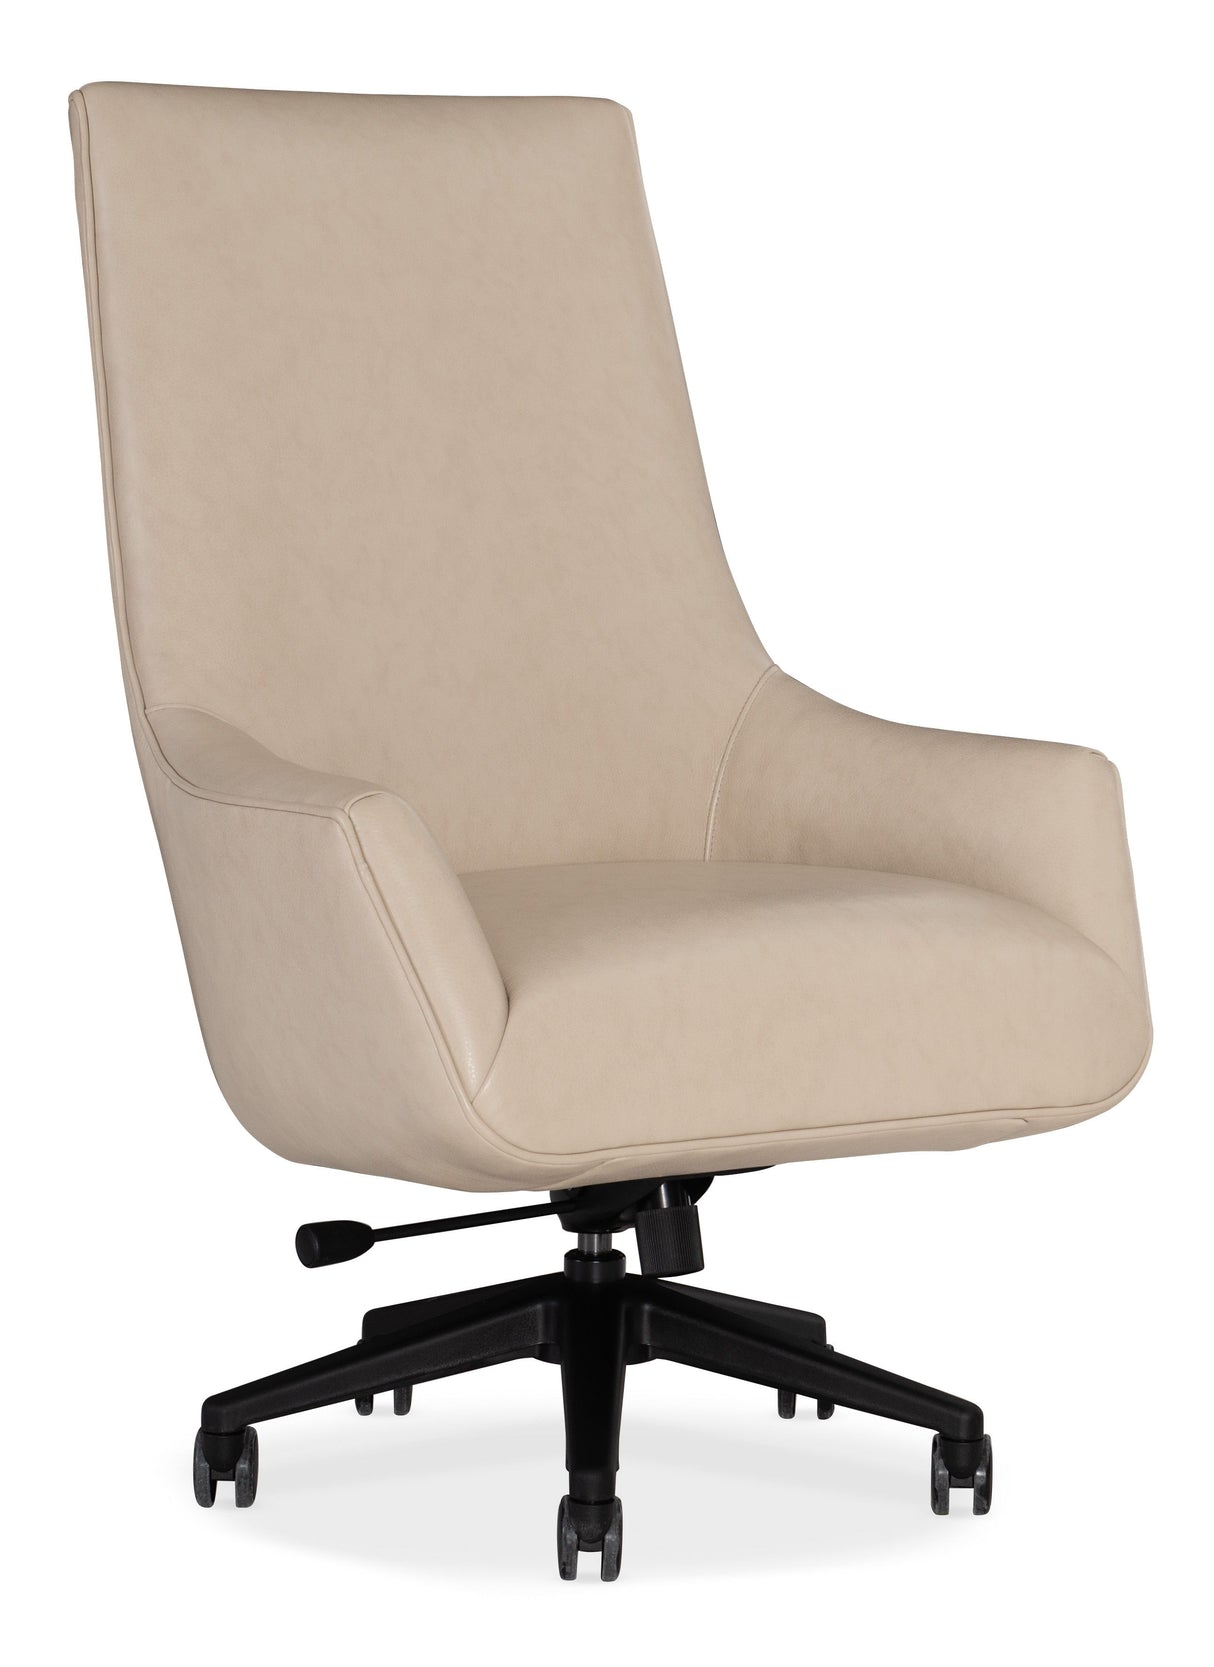 Emilio - Home Office Swivel Tilt Chair